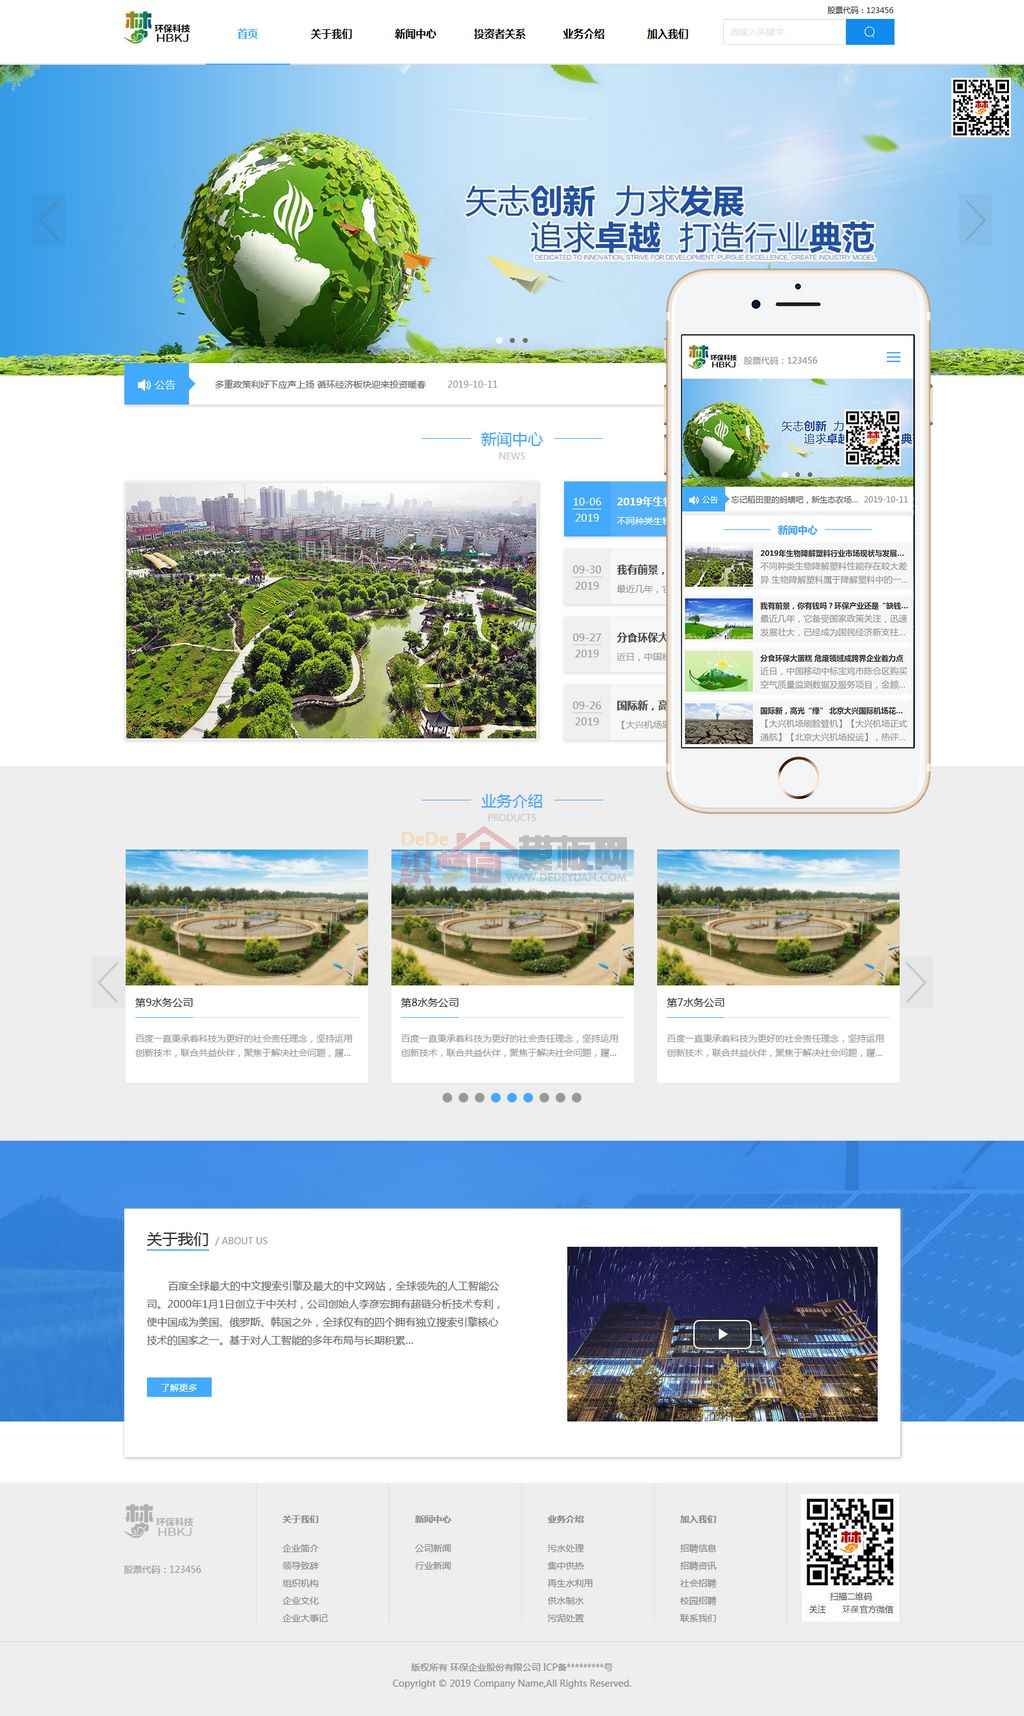 HTML5蓝色宽屏简洁环保科技绿色能源Wordpress企业模板(自适应手机端)截图